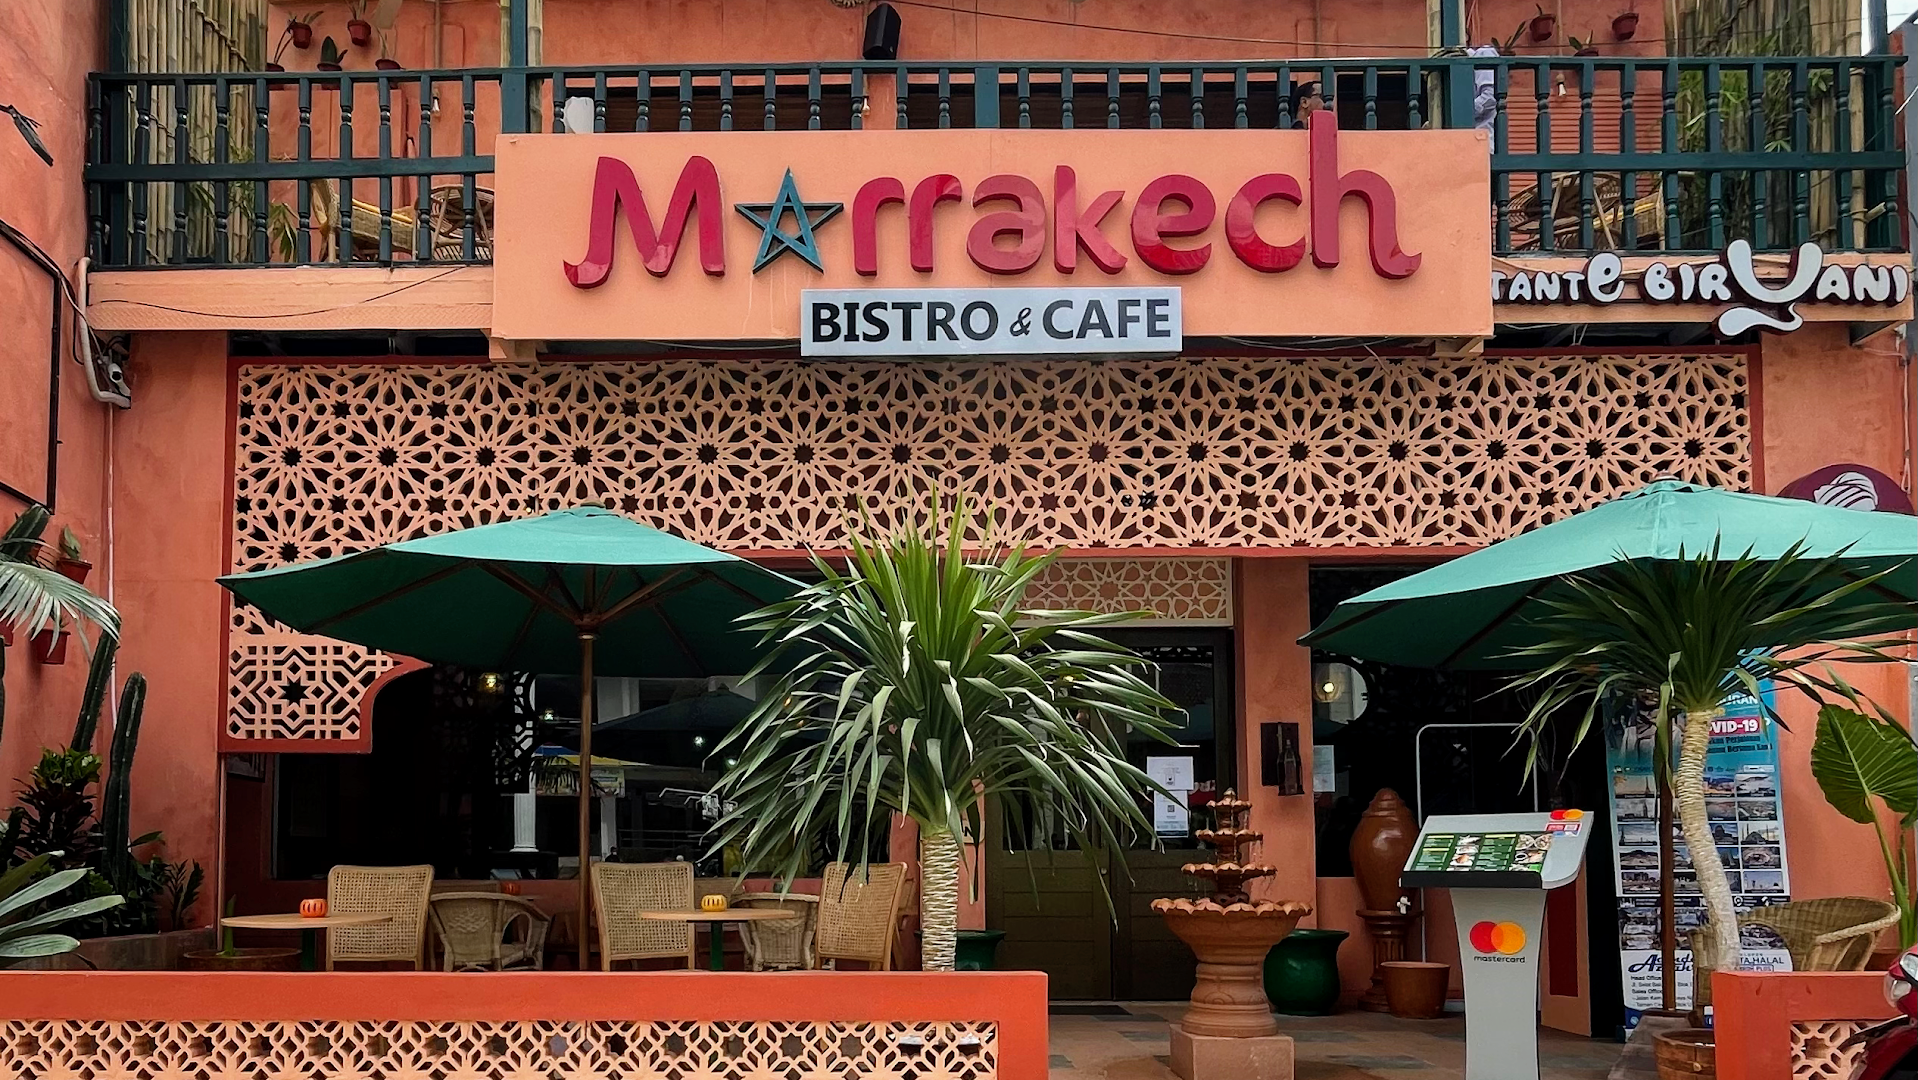 Gambar Marrakech Bistro & Cafe